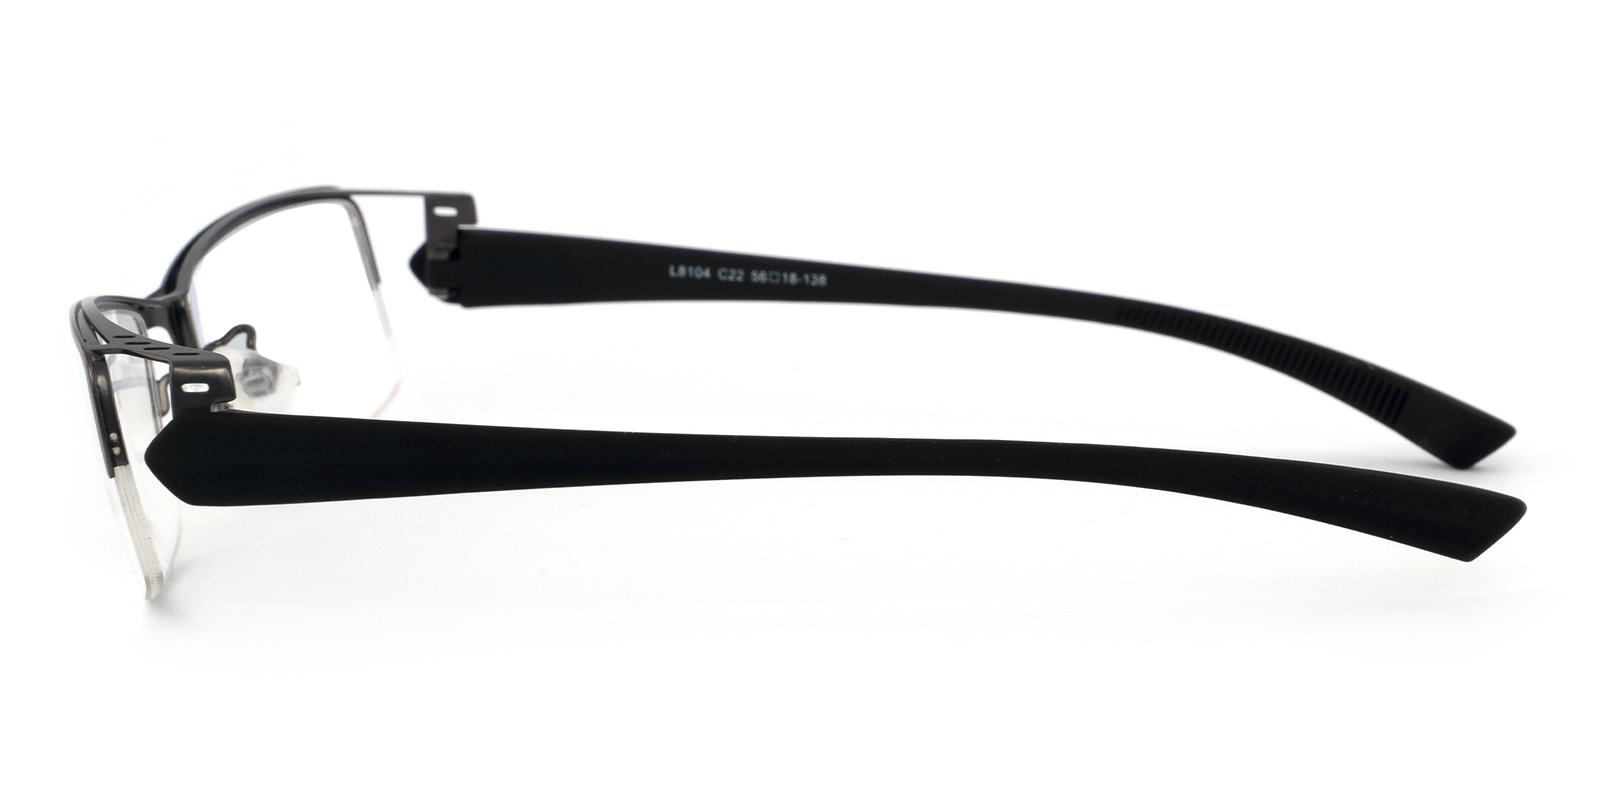 Jaxon Gun Metal Eyeglasses , NosePads Frames from ABBE Glasses